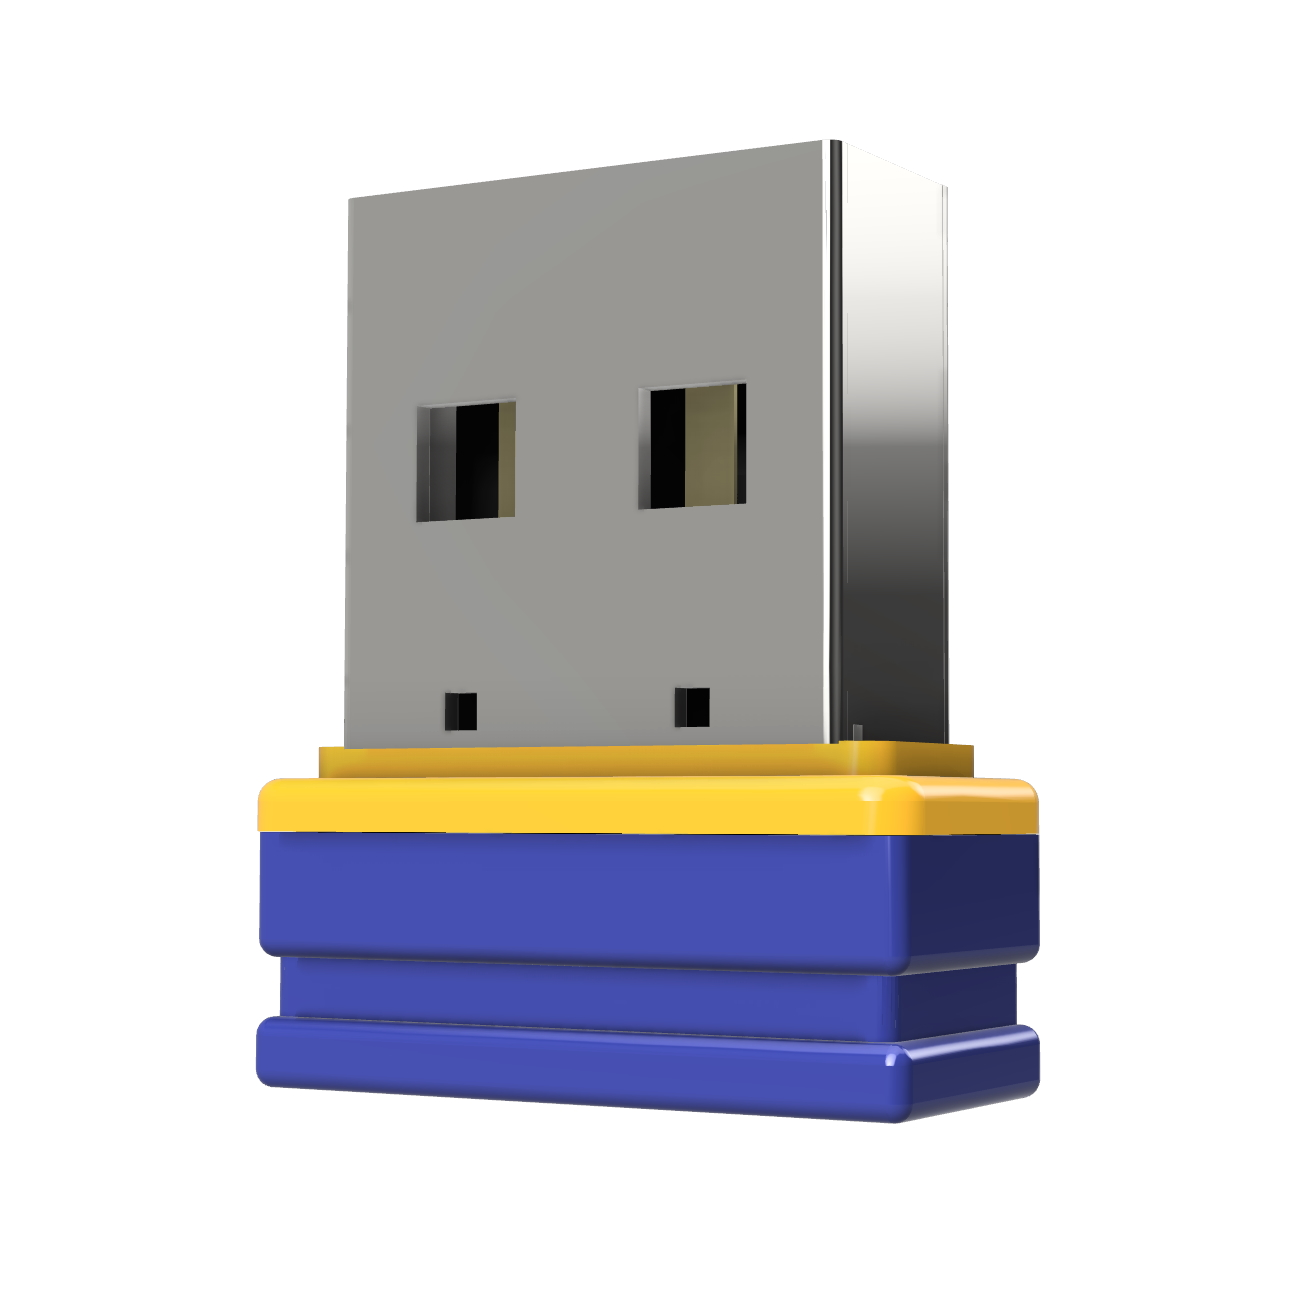 4 P1 (Blau/Gelb, Mini ®ULTRA GB) USB GERMANY USB-Stick